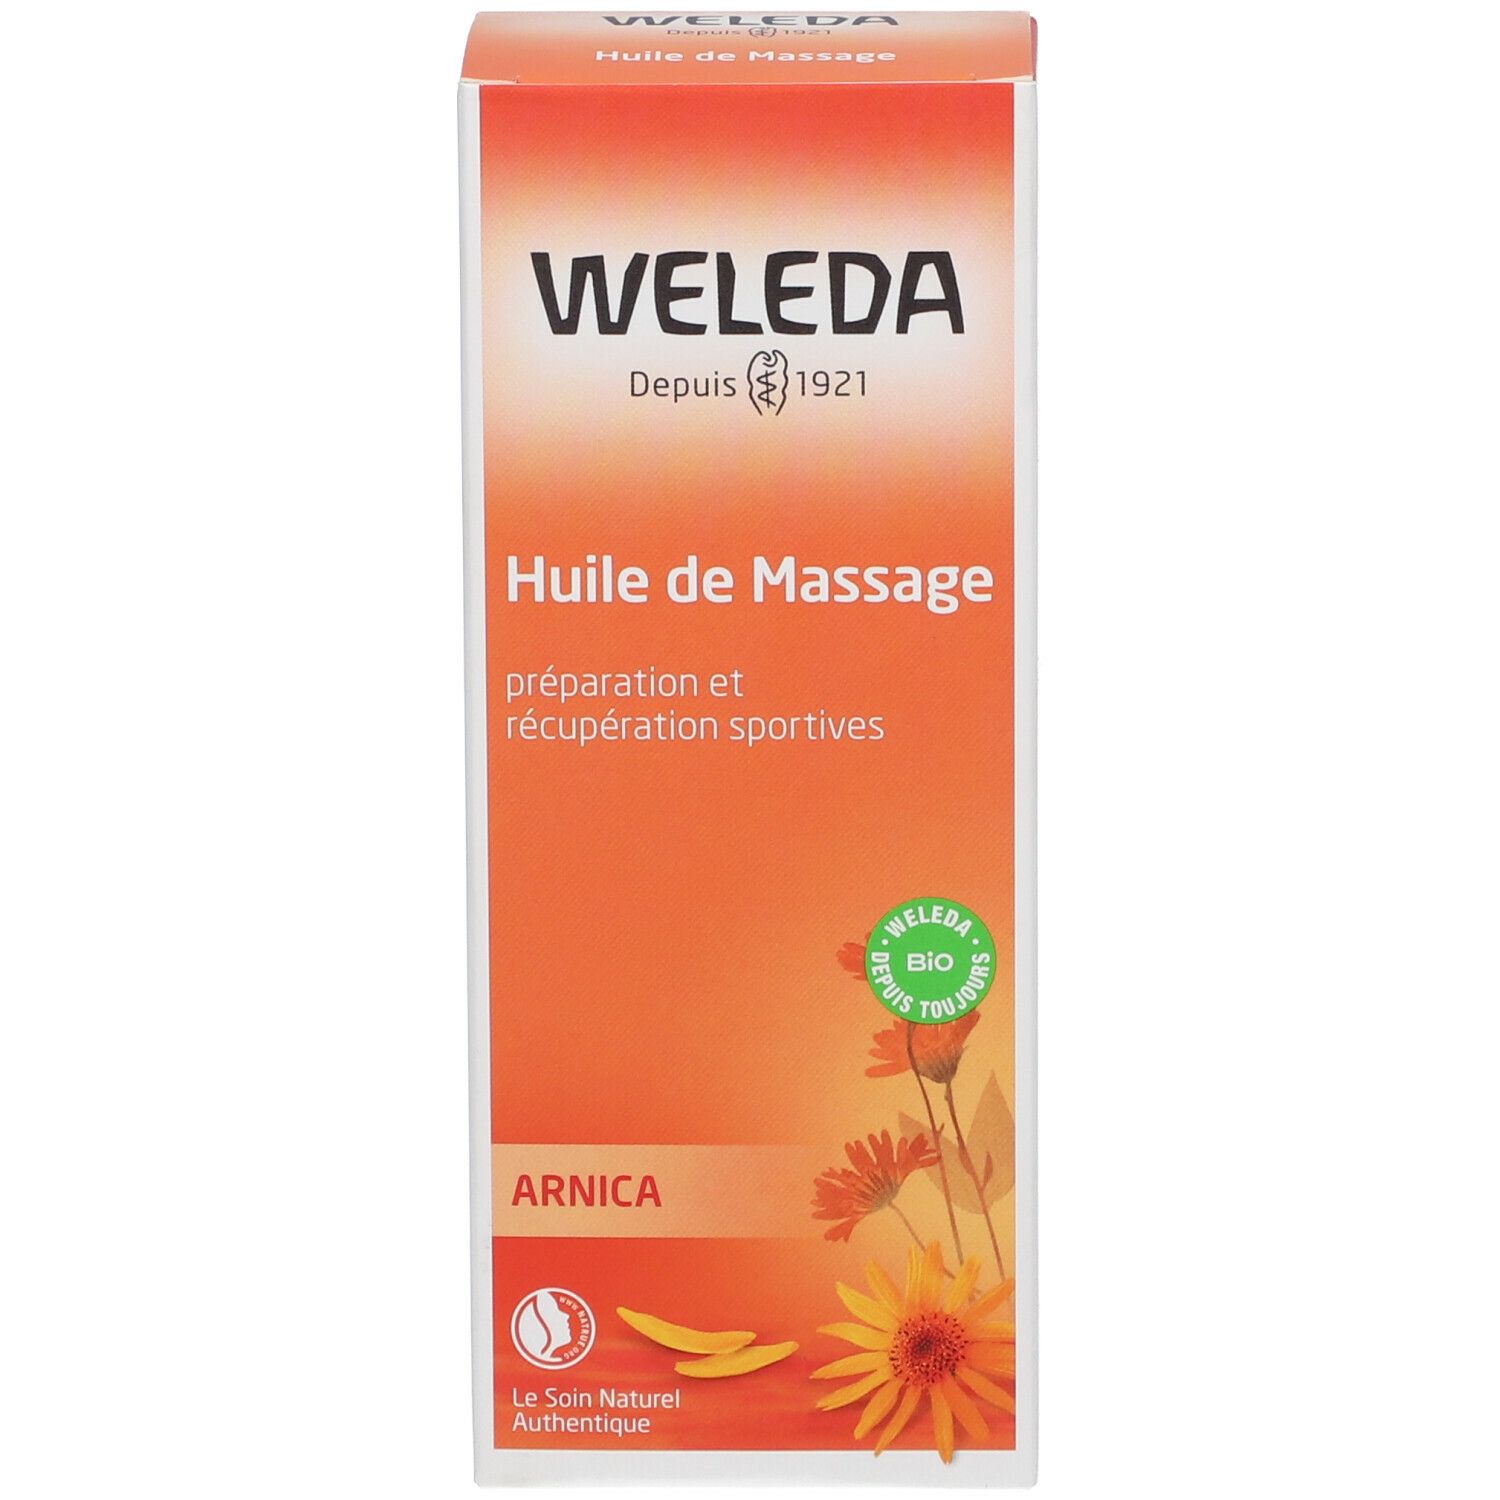 WELEDA Huile de Massage à Arnica